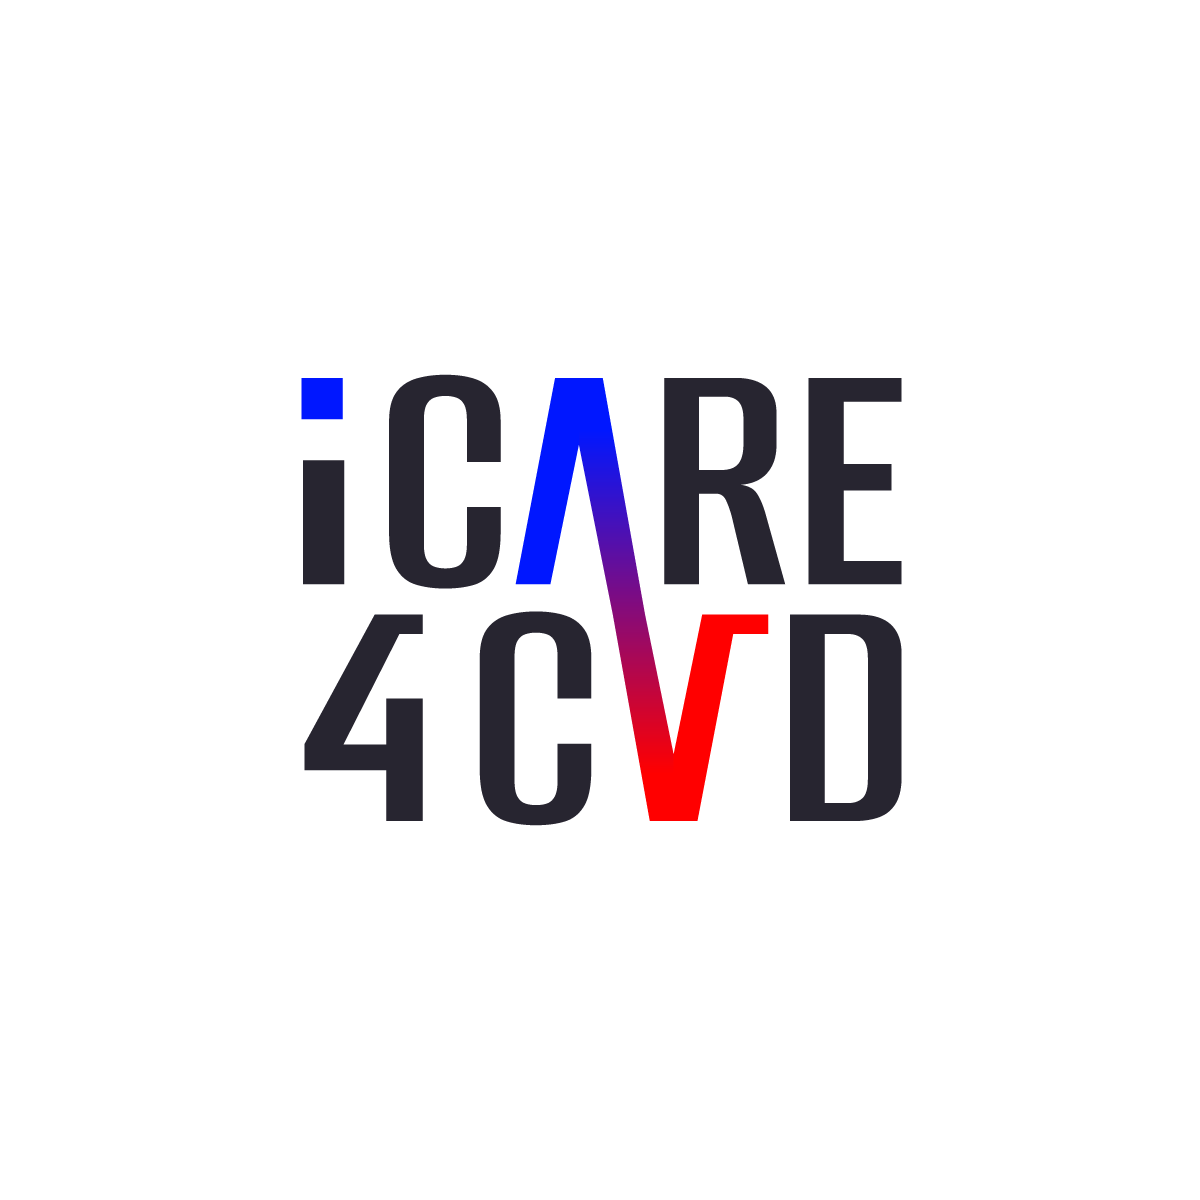 iCARE4CVD logo